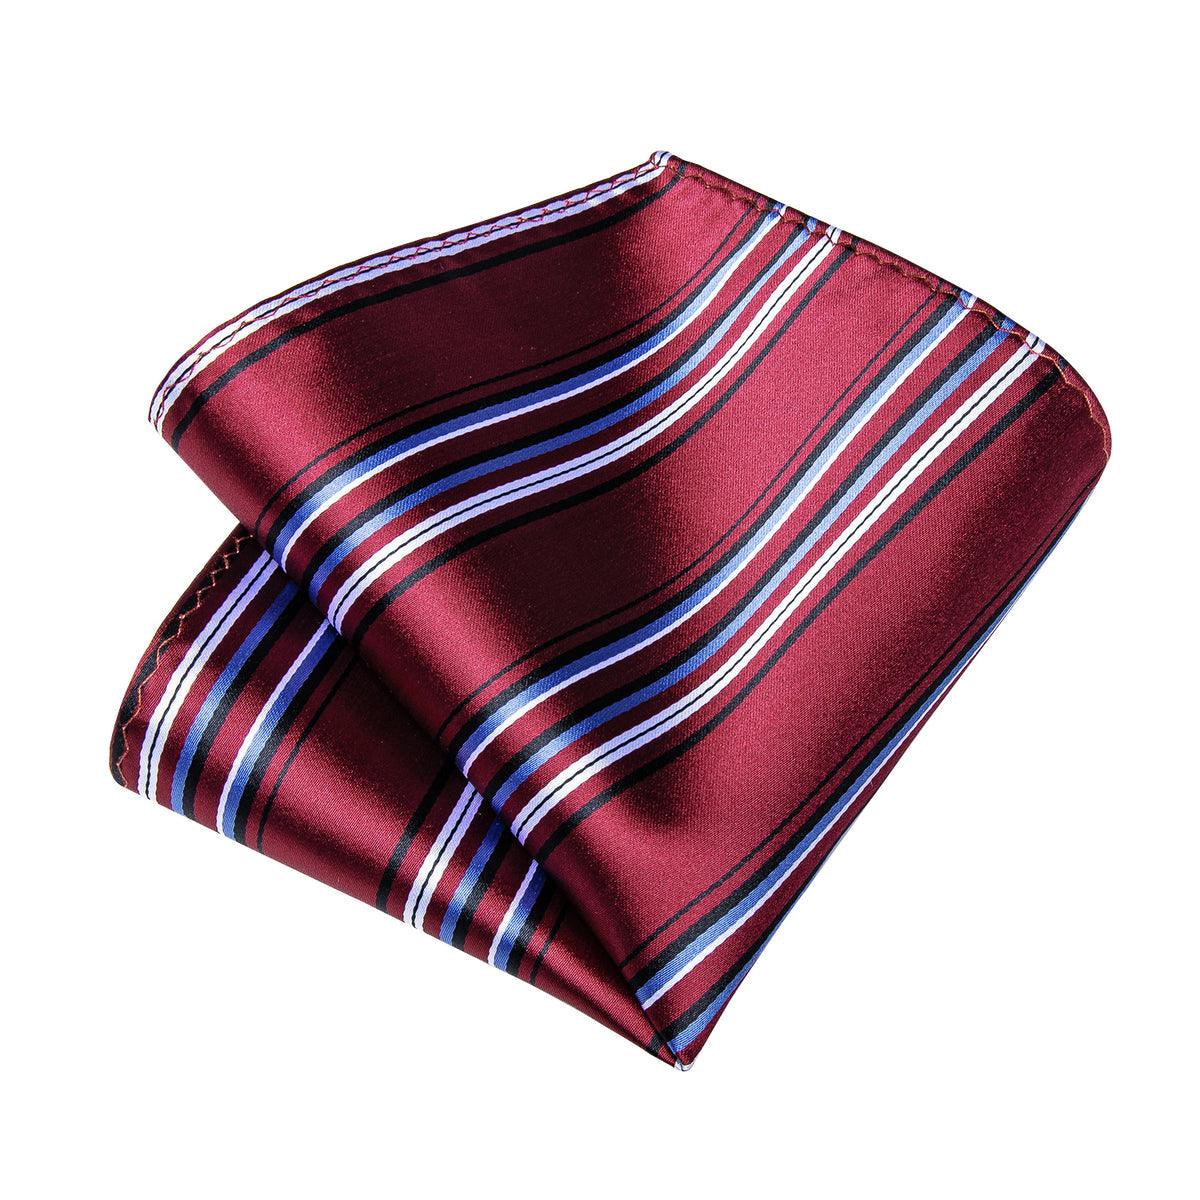 Classic Burgundy Striped Silk Tie Pocket Square Cufflink Set - STYLETIE